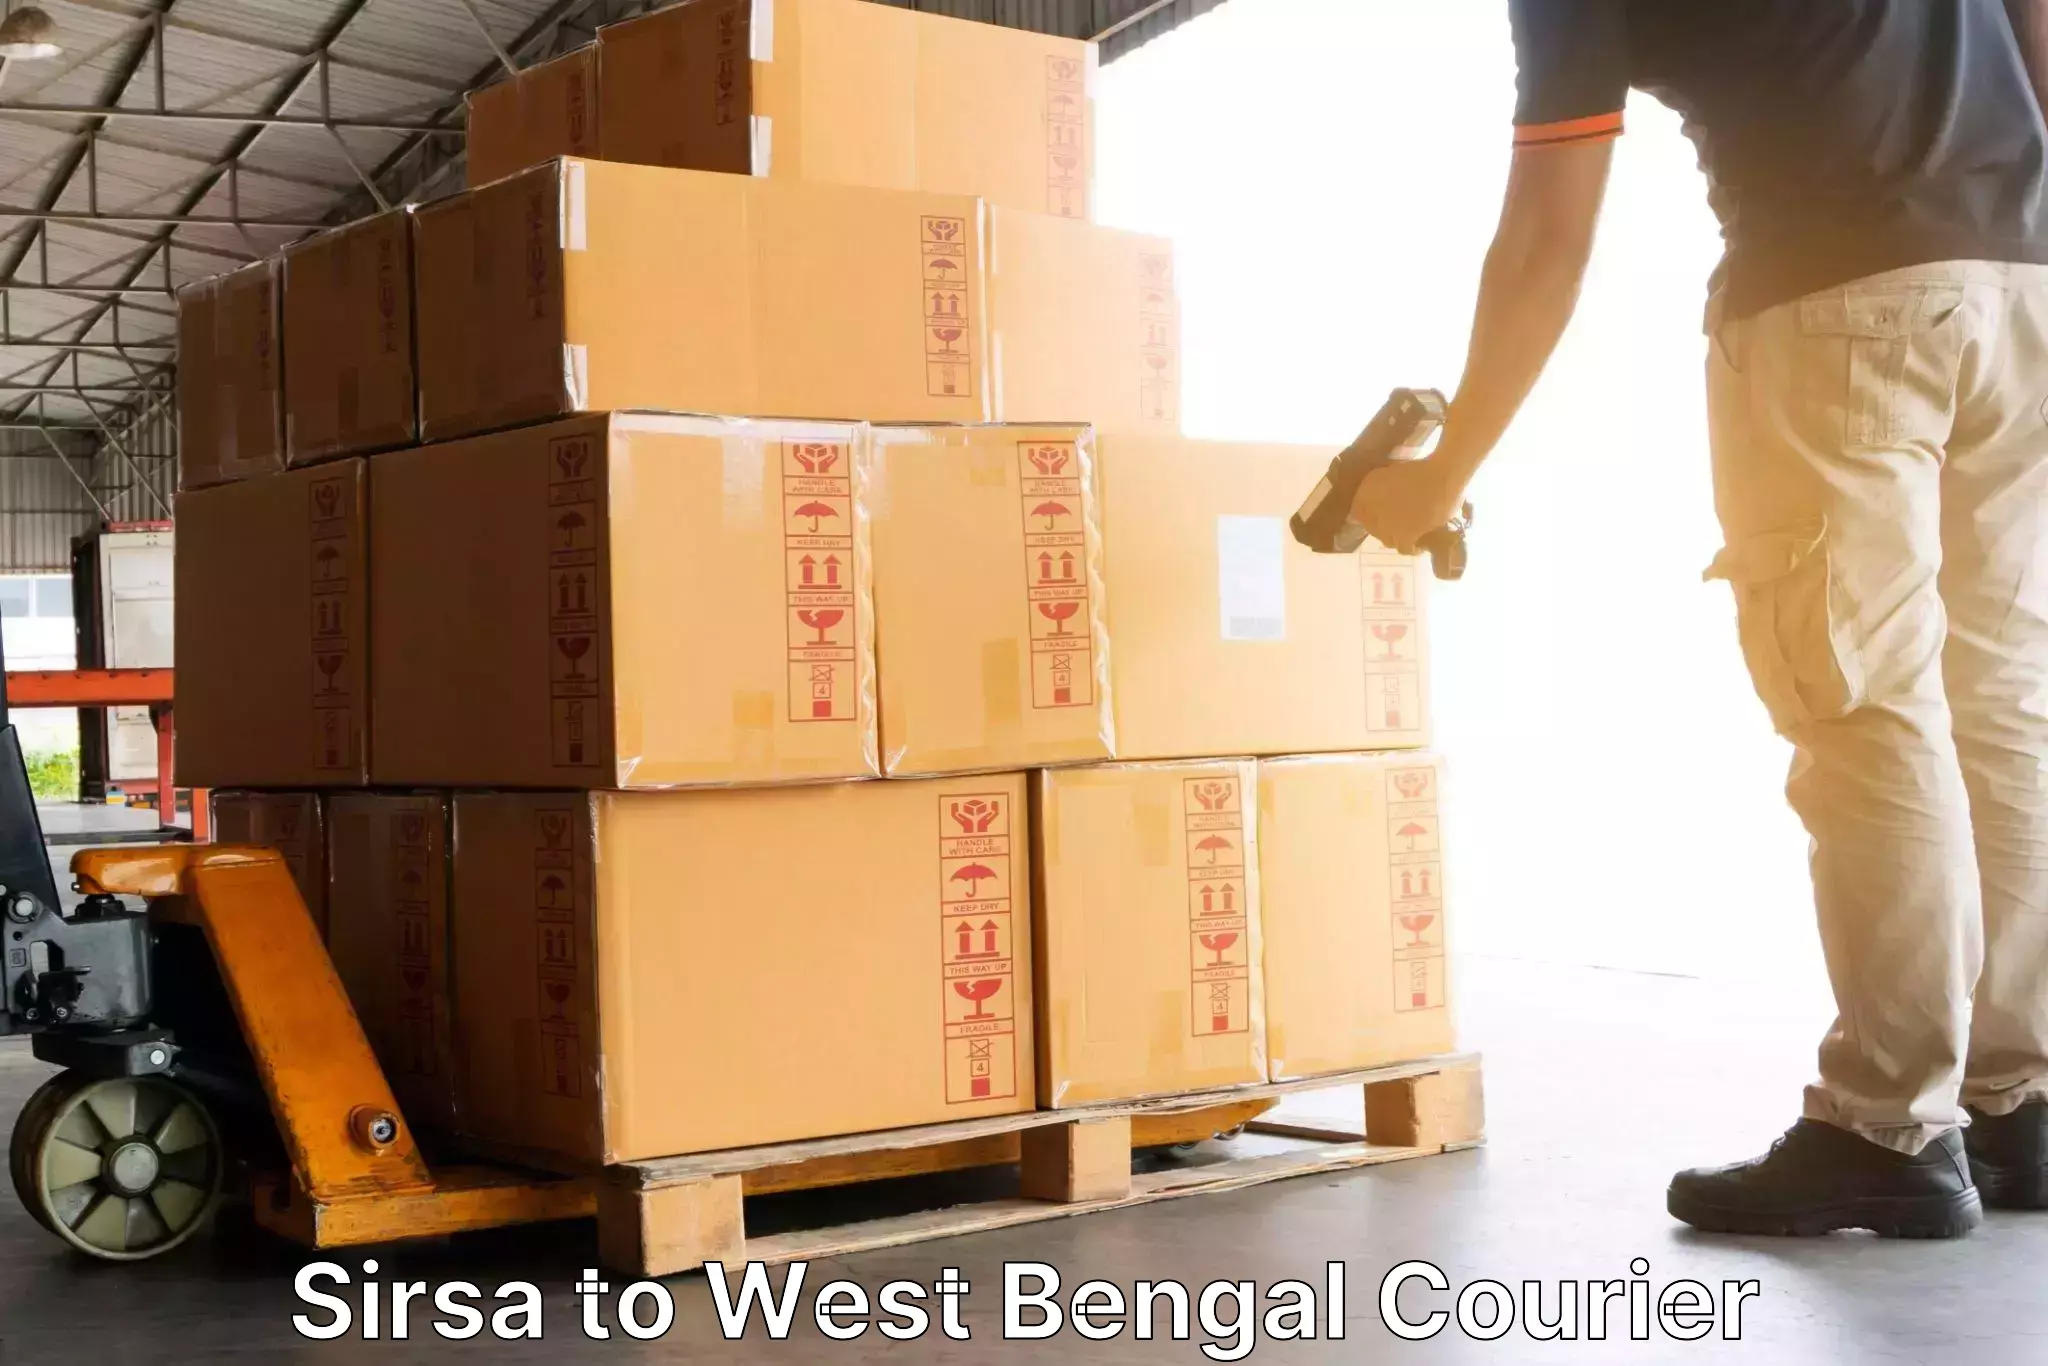 Efficient logistics management in Sirsa to Binnaguri